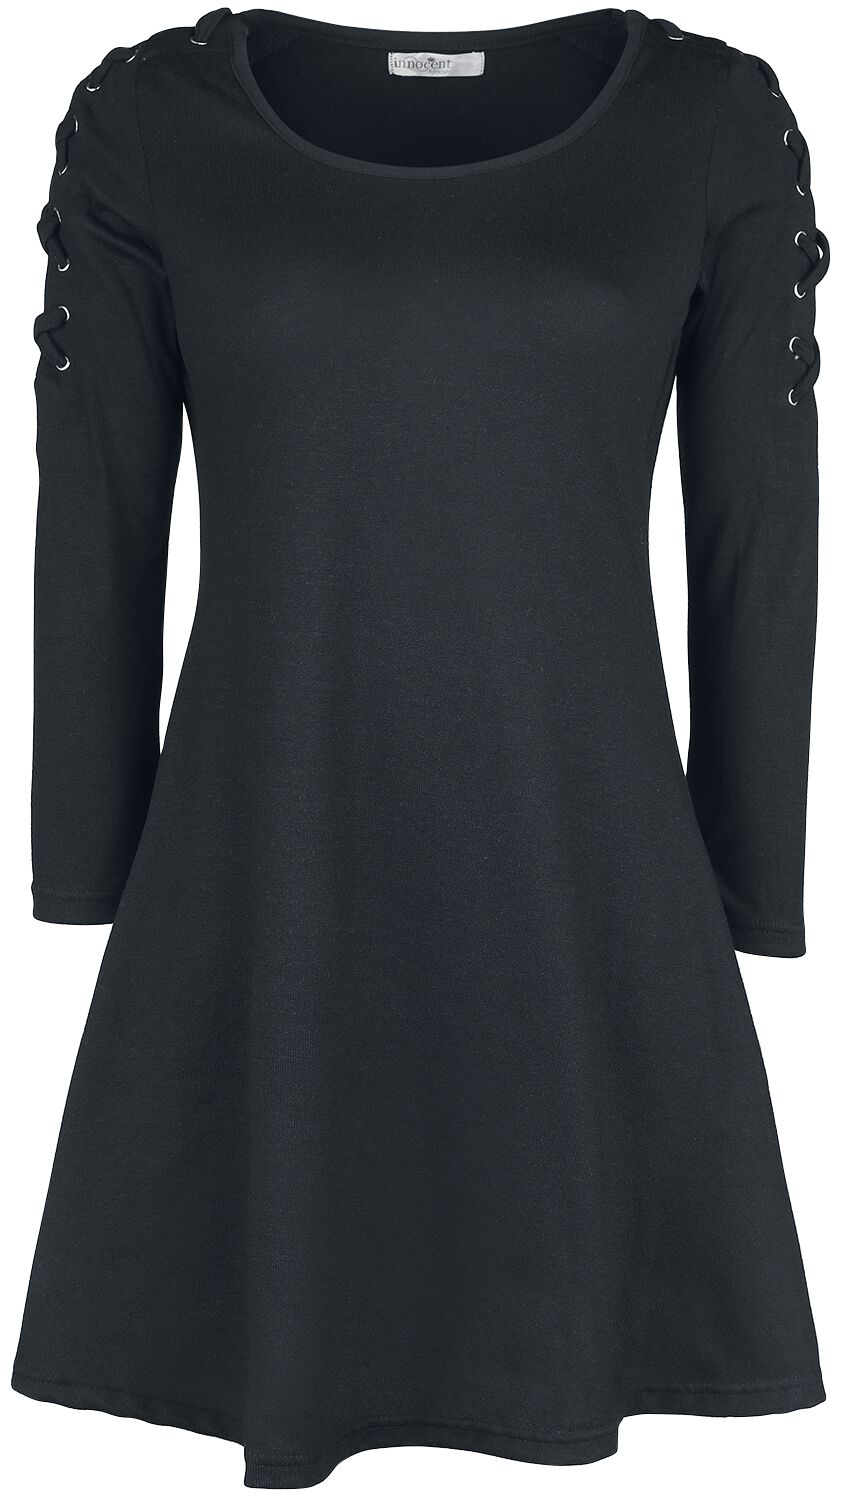 Innocent Kurzes Kleid - Collette Dress - S bis 4XL - für Damen - Größe S - schwarz